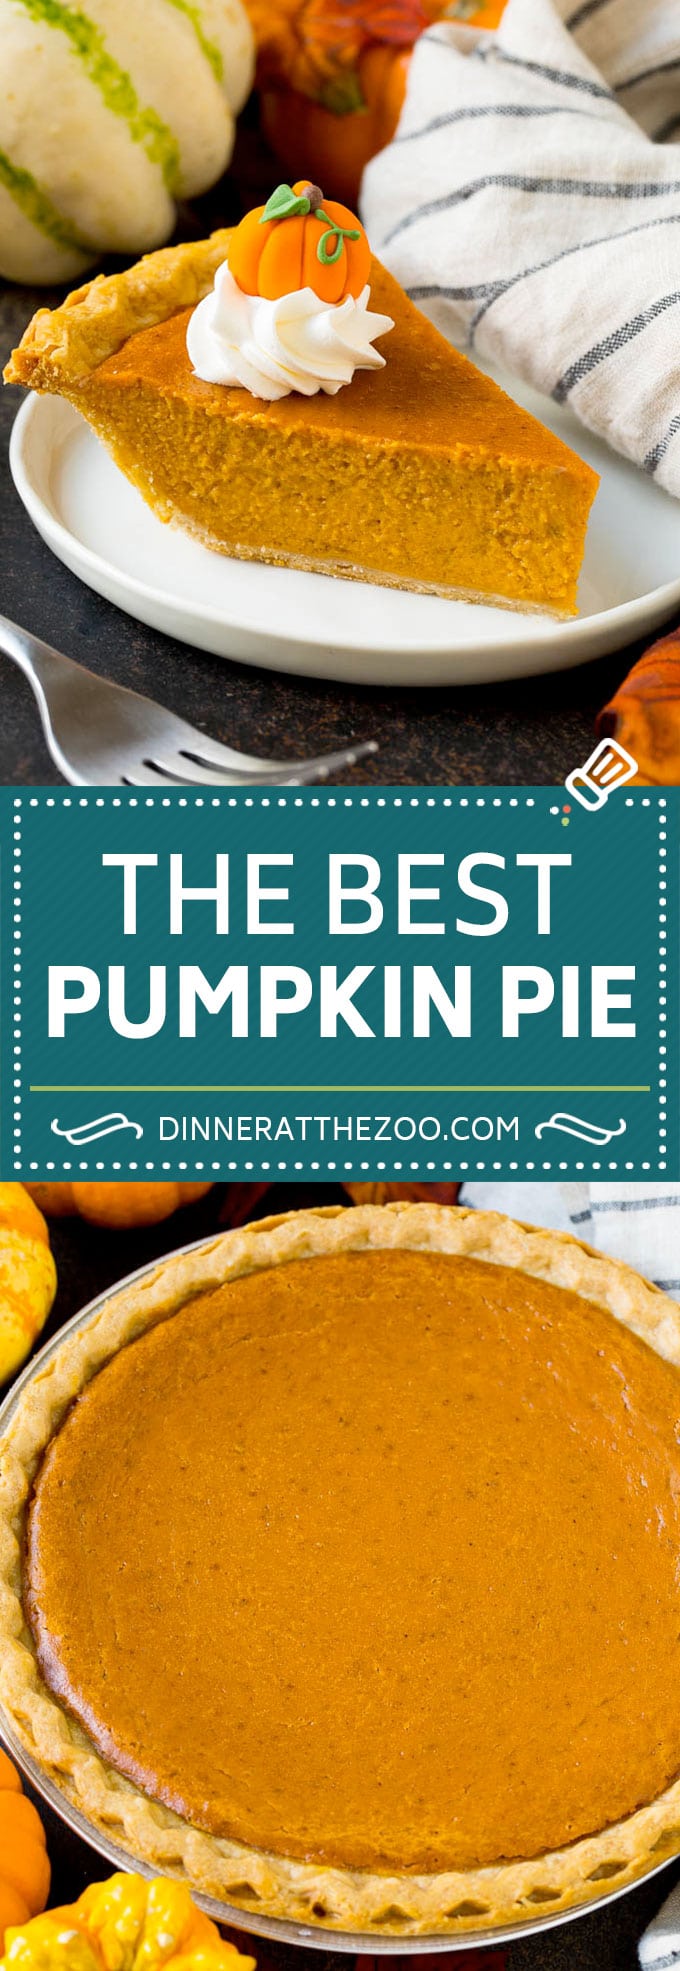 Homemade Pumpkin Pie Recipe | Pumpkin Pie #pie #pumpkin #baking #thanksgiving #fall #dessert #dinneratthezoo